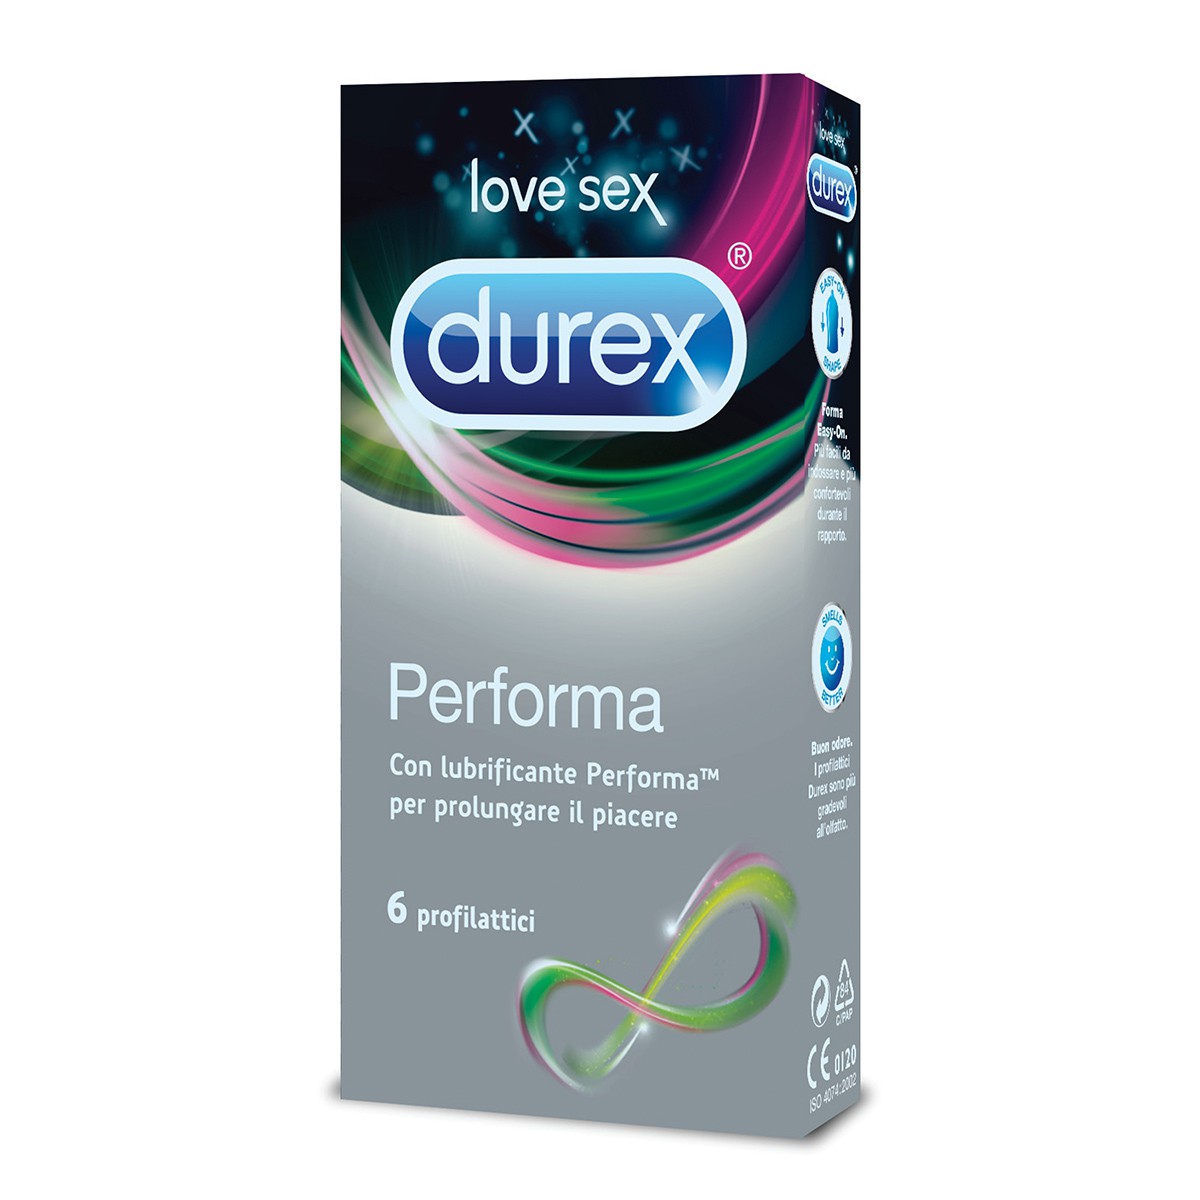 DUREX 4 preservativi performa con lubrificante per prolungare il piacere